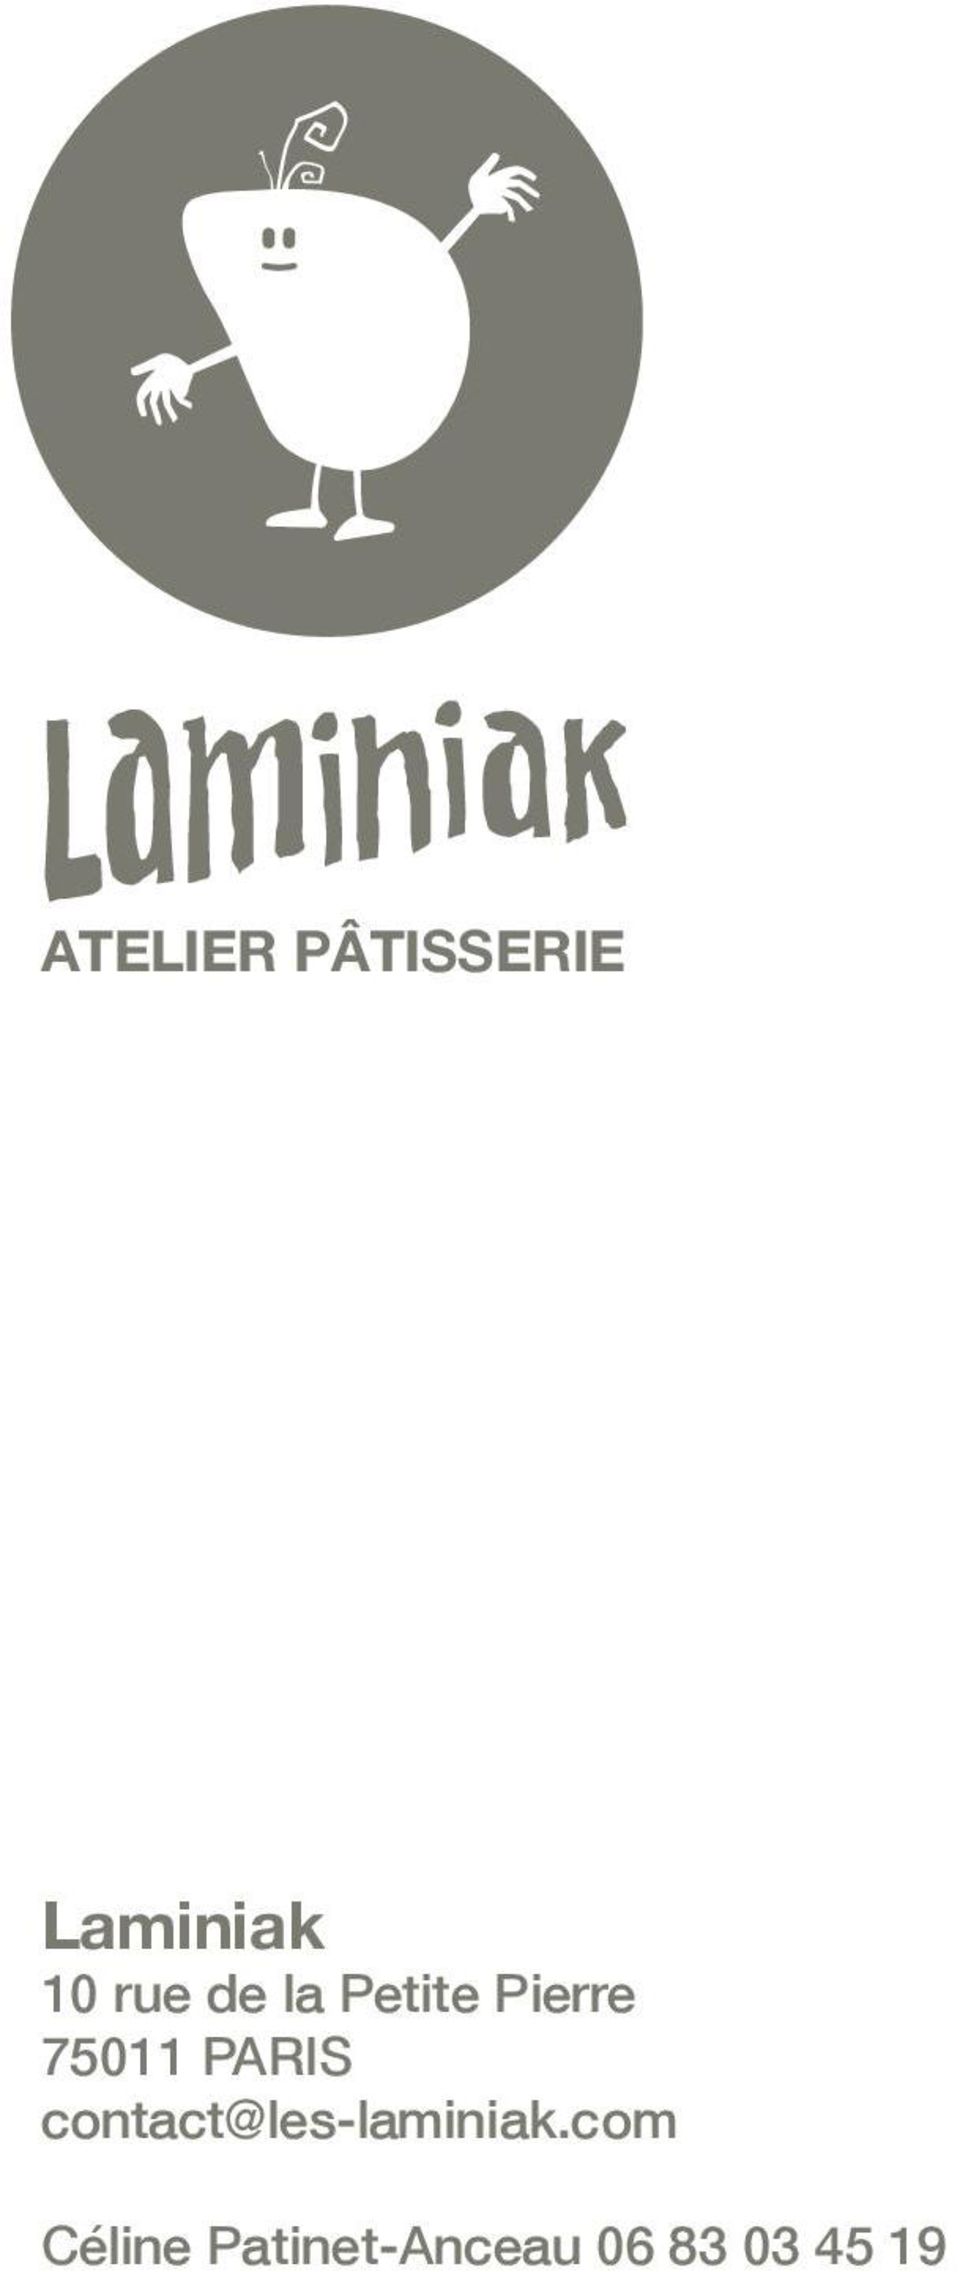 PARIS contact@les-laminiak.